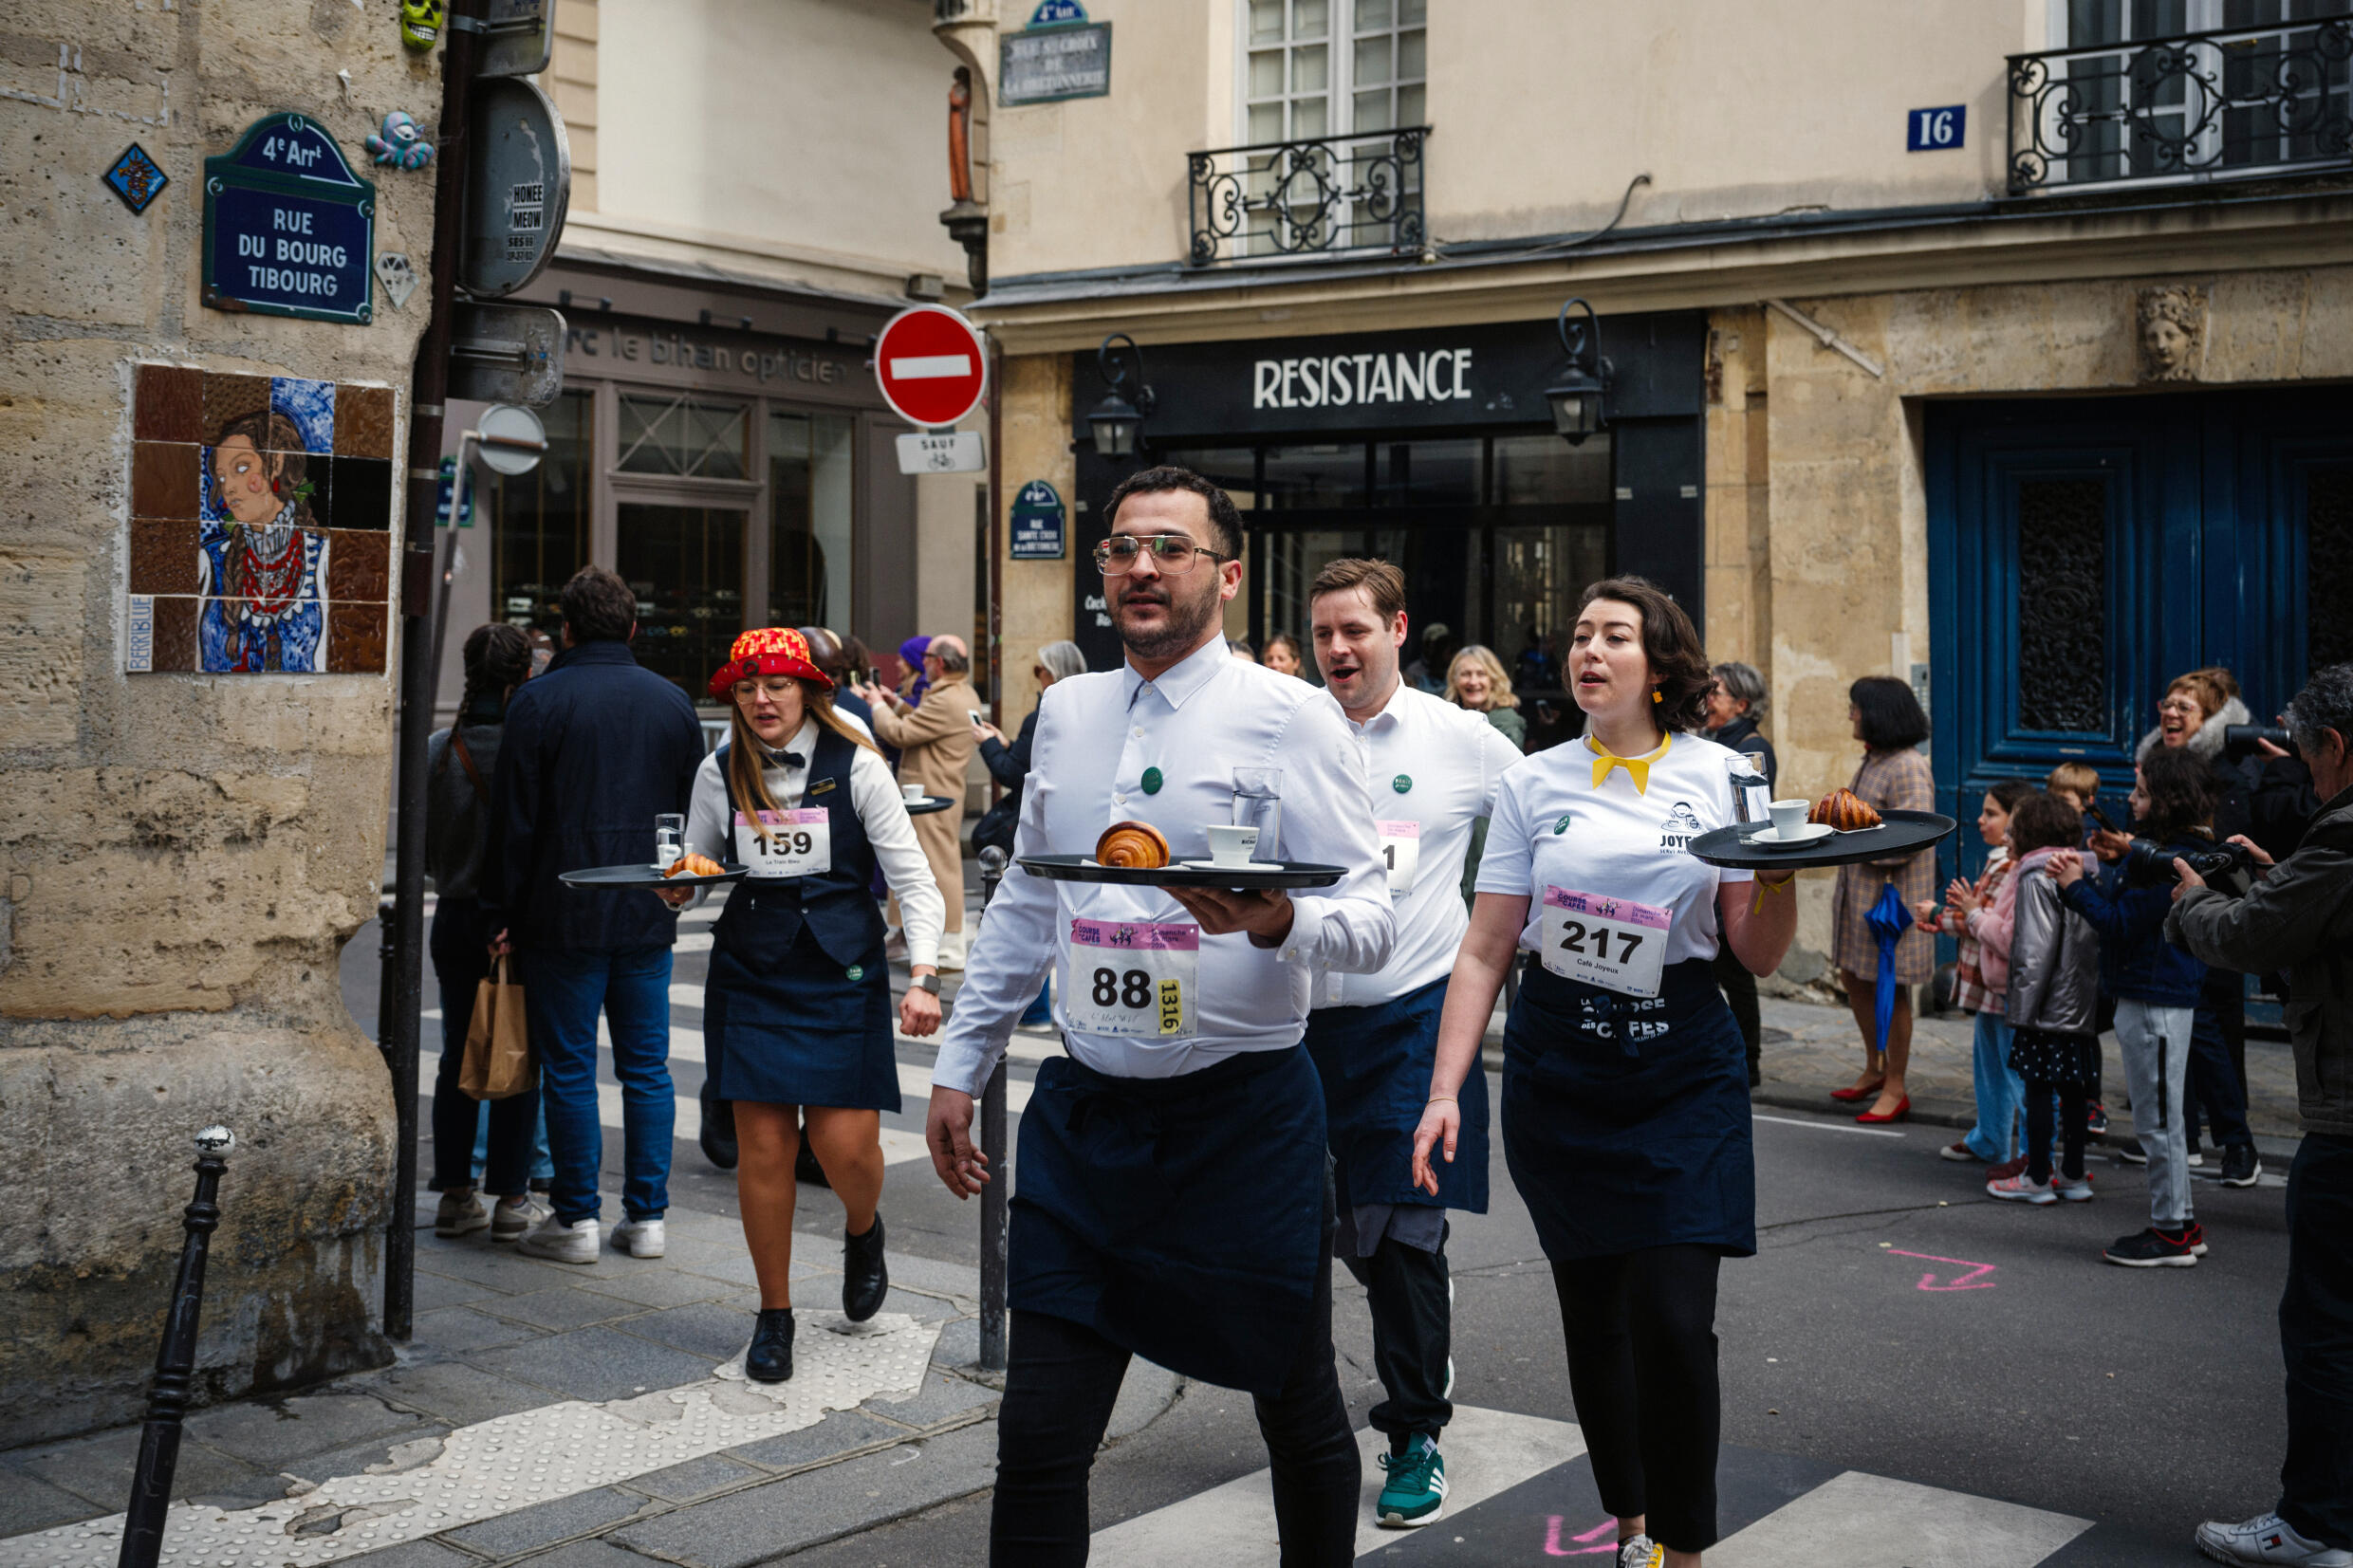 Los competidores recorrieron las calles medievales del barrio de Marais.